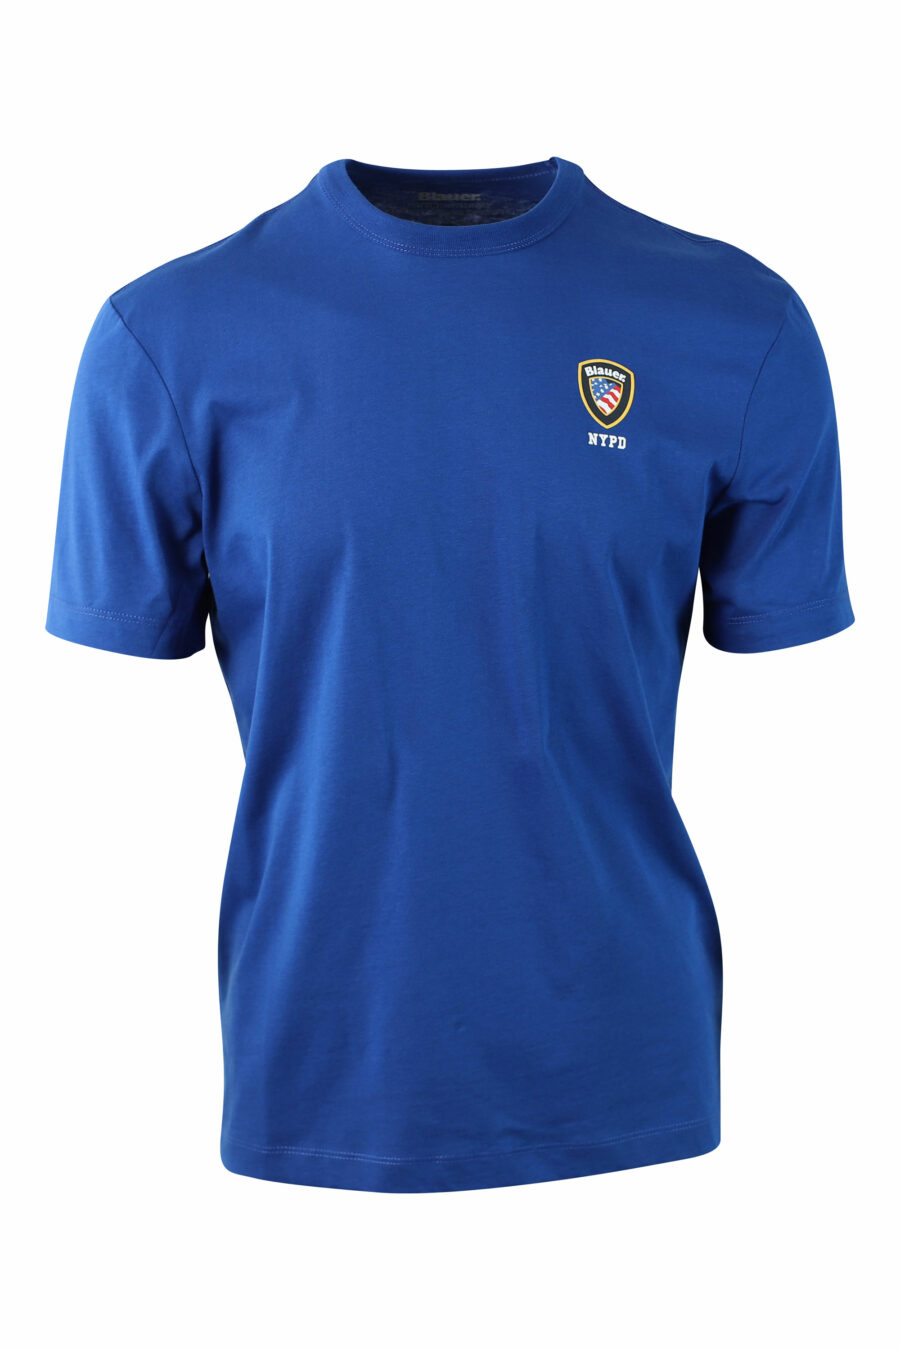 T-shirt azul com escudo com mini logótipo - IMG 0004